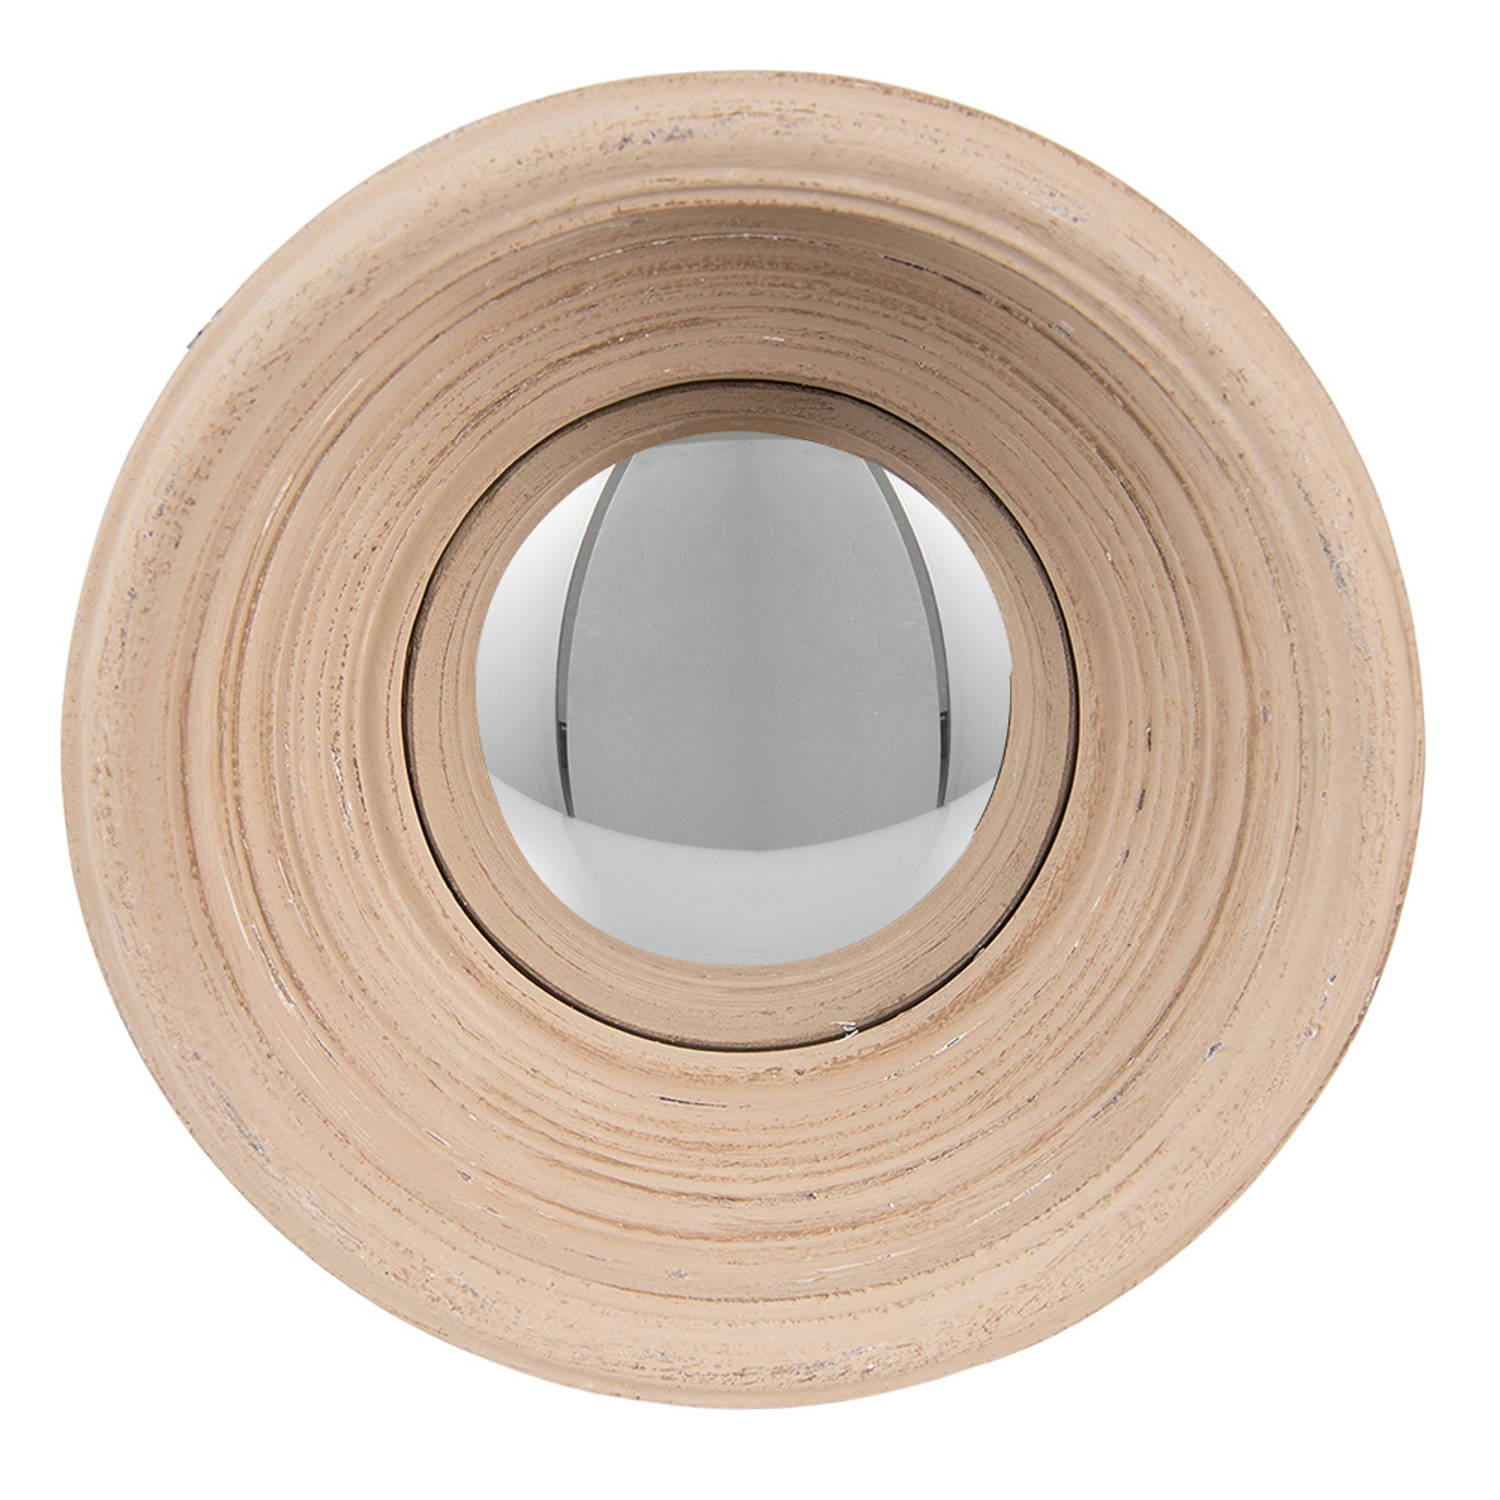 HAES DECO - Bolle ronde Spiegel - Kleur Beige - Formaat Ø 24x7 cm - Materiaal Polyurethaan ( PU) - Wandspiegel, Spiegel rond, Convex Glas